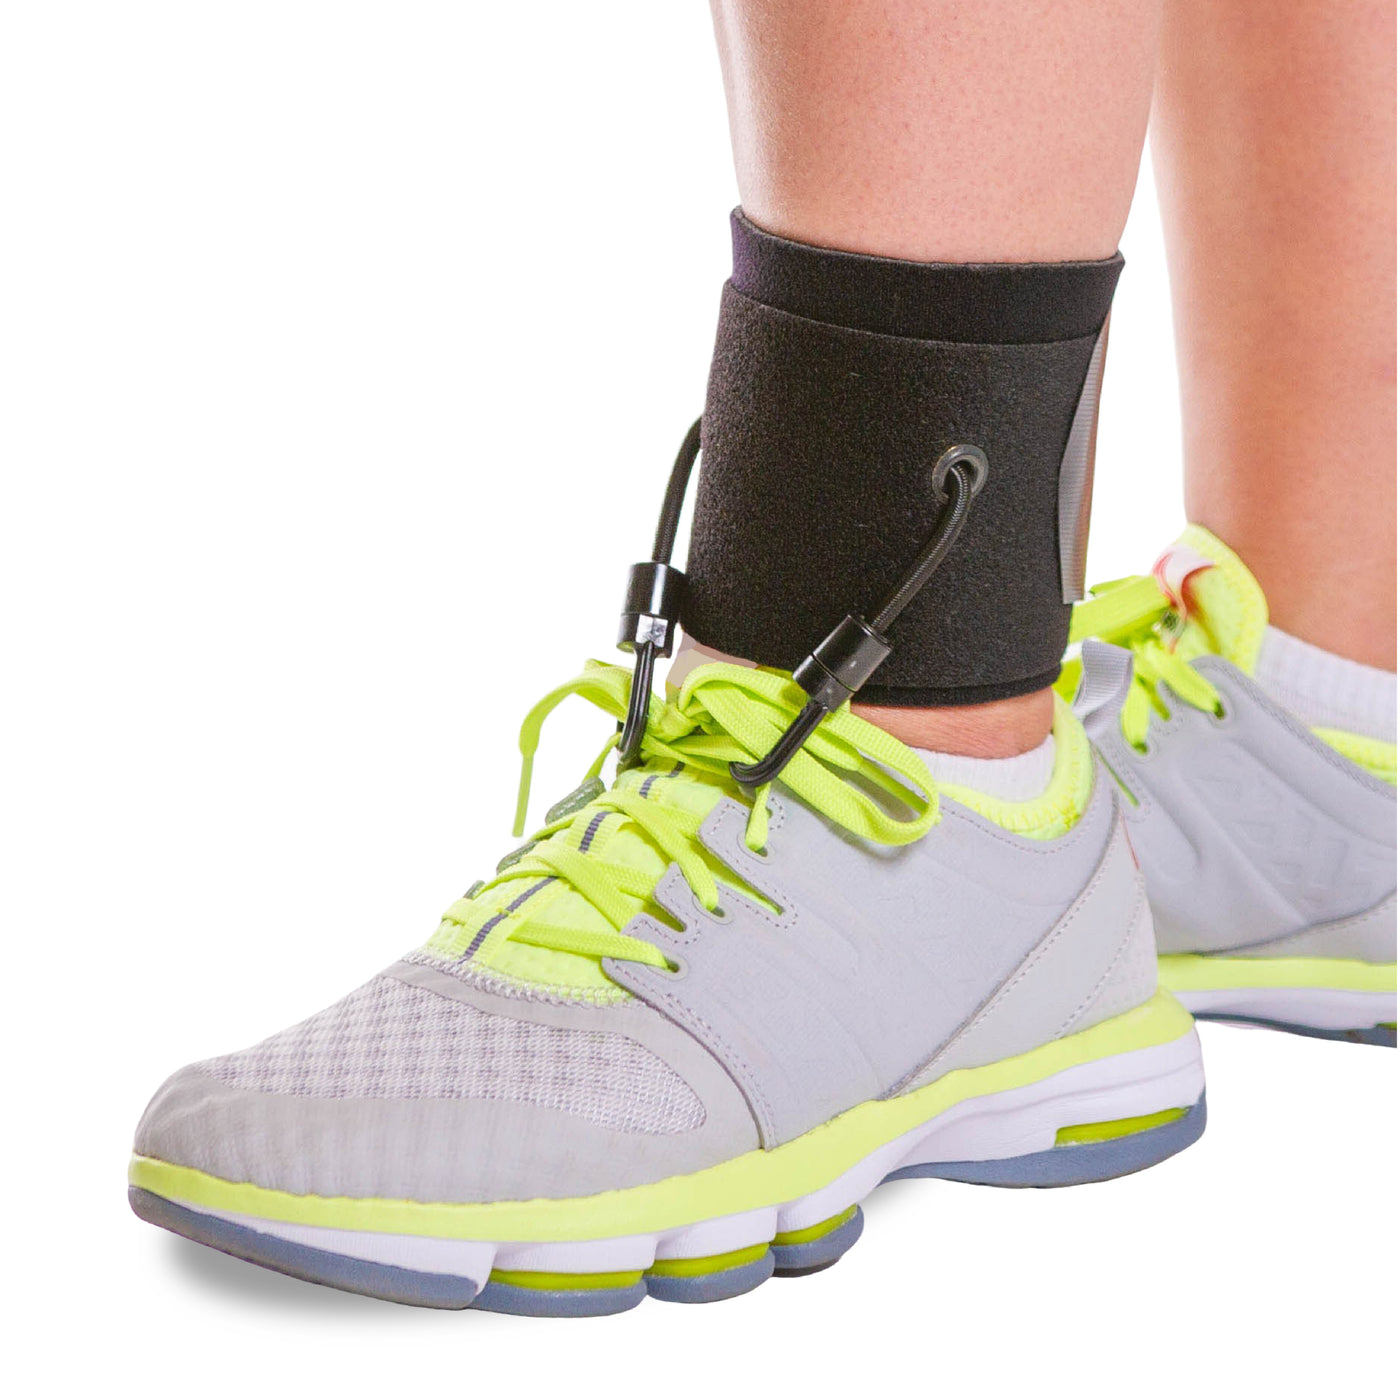 Soft AFO Drop Foot Brace | Treatment When Walking in Shoes